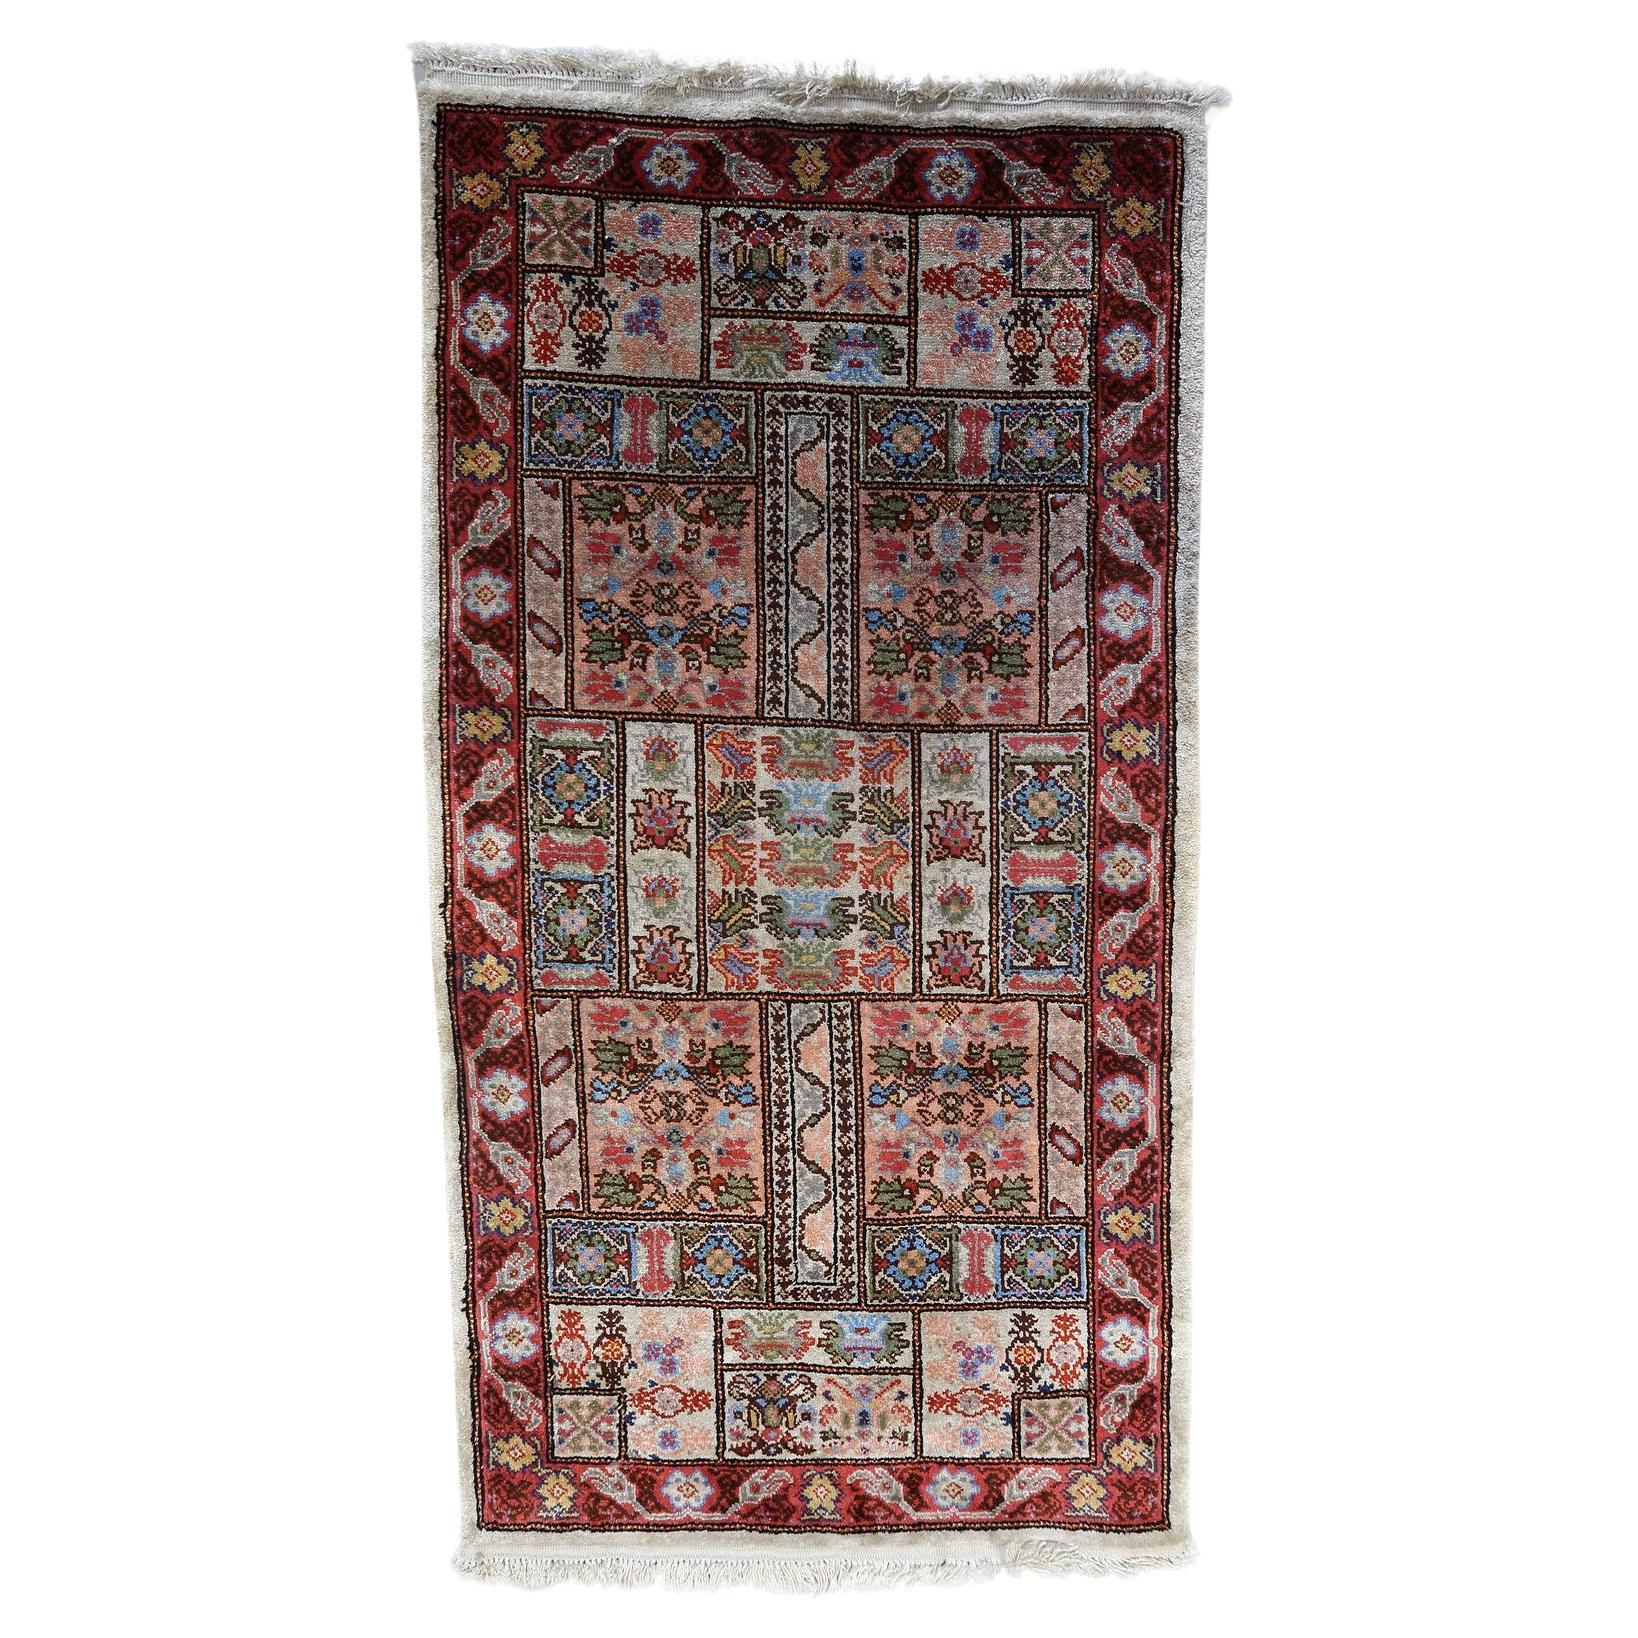 Handgefertigter Vintage-Teppich aus tunesischer Seide 1,6' x 3,7', 1970er Jahre - 1C1113